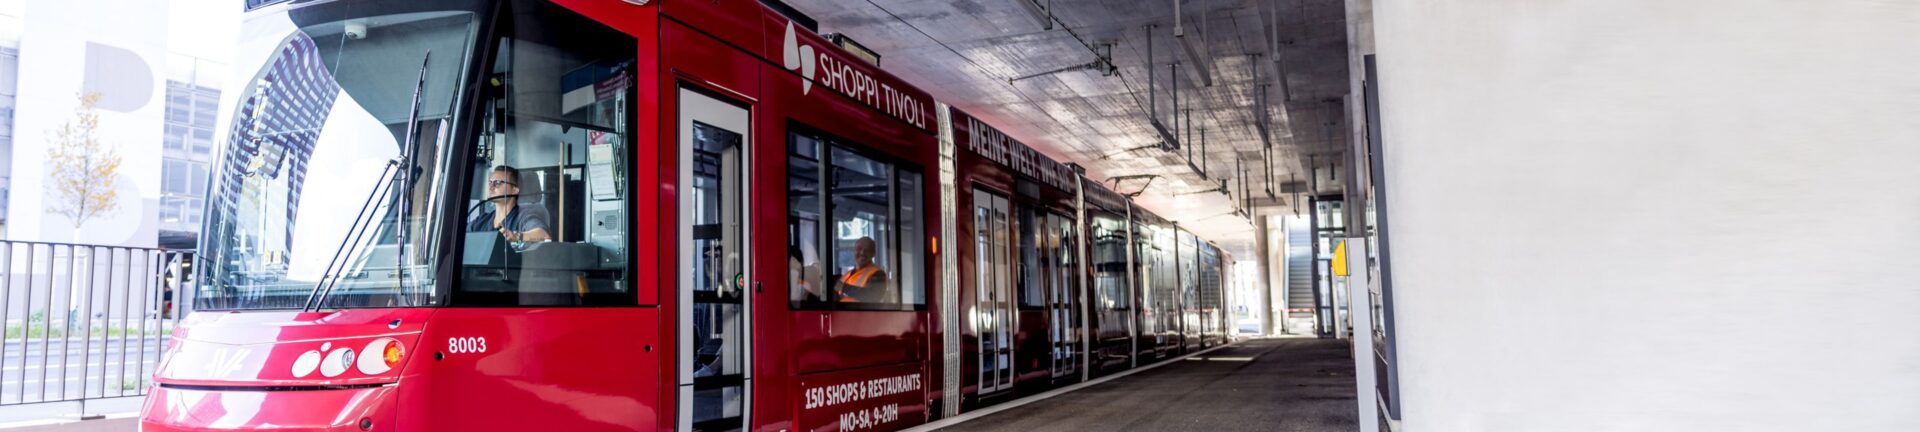 Elektroinstallationen für den Bahnhof Shoppi Tivoli der Limmattalbahn Featured Image